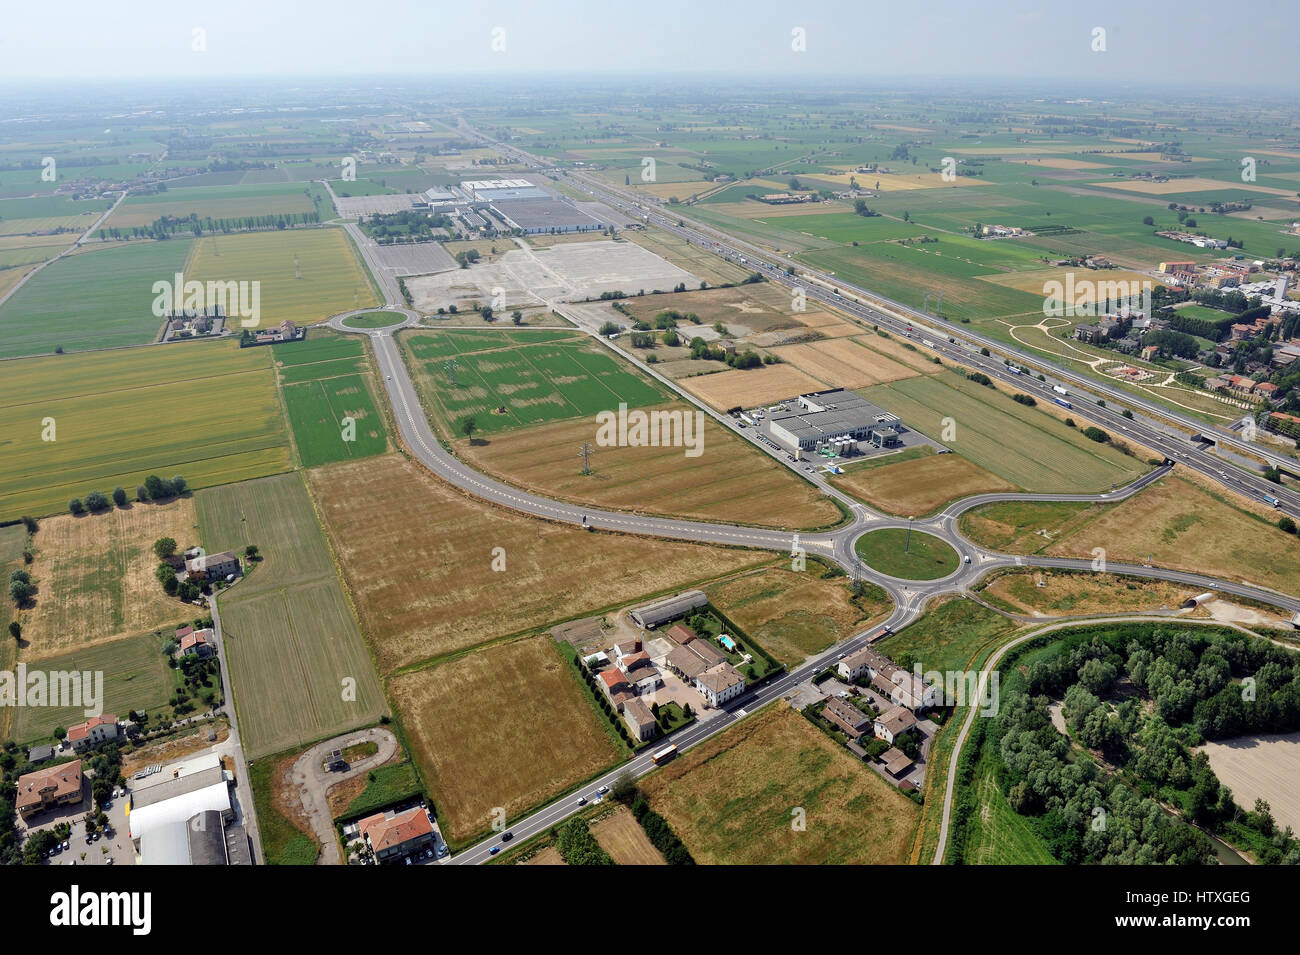 Vista aérea del nuevo centro comercial, el centro comercial, la construcción de condominios cerca de Parma, Emilia Romagna, Italiy, autopista A1 Foto de stock